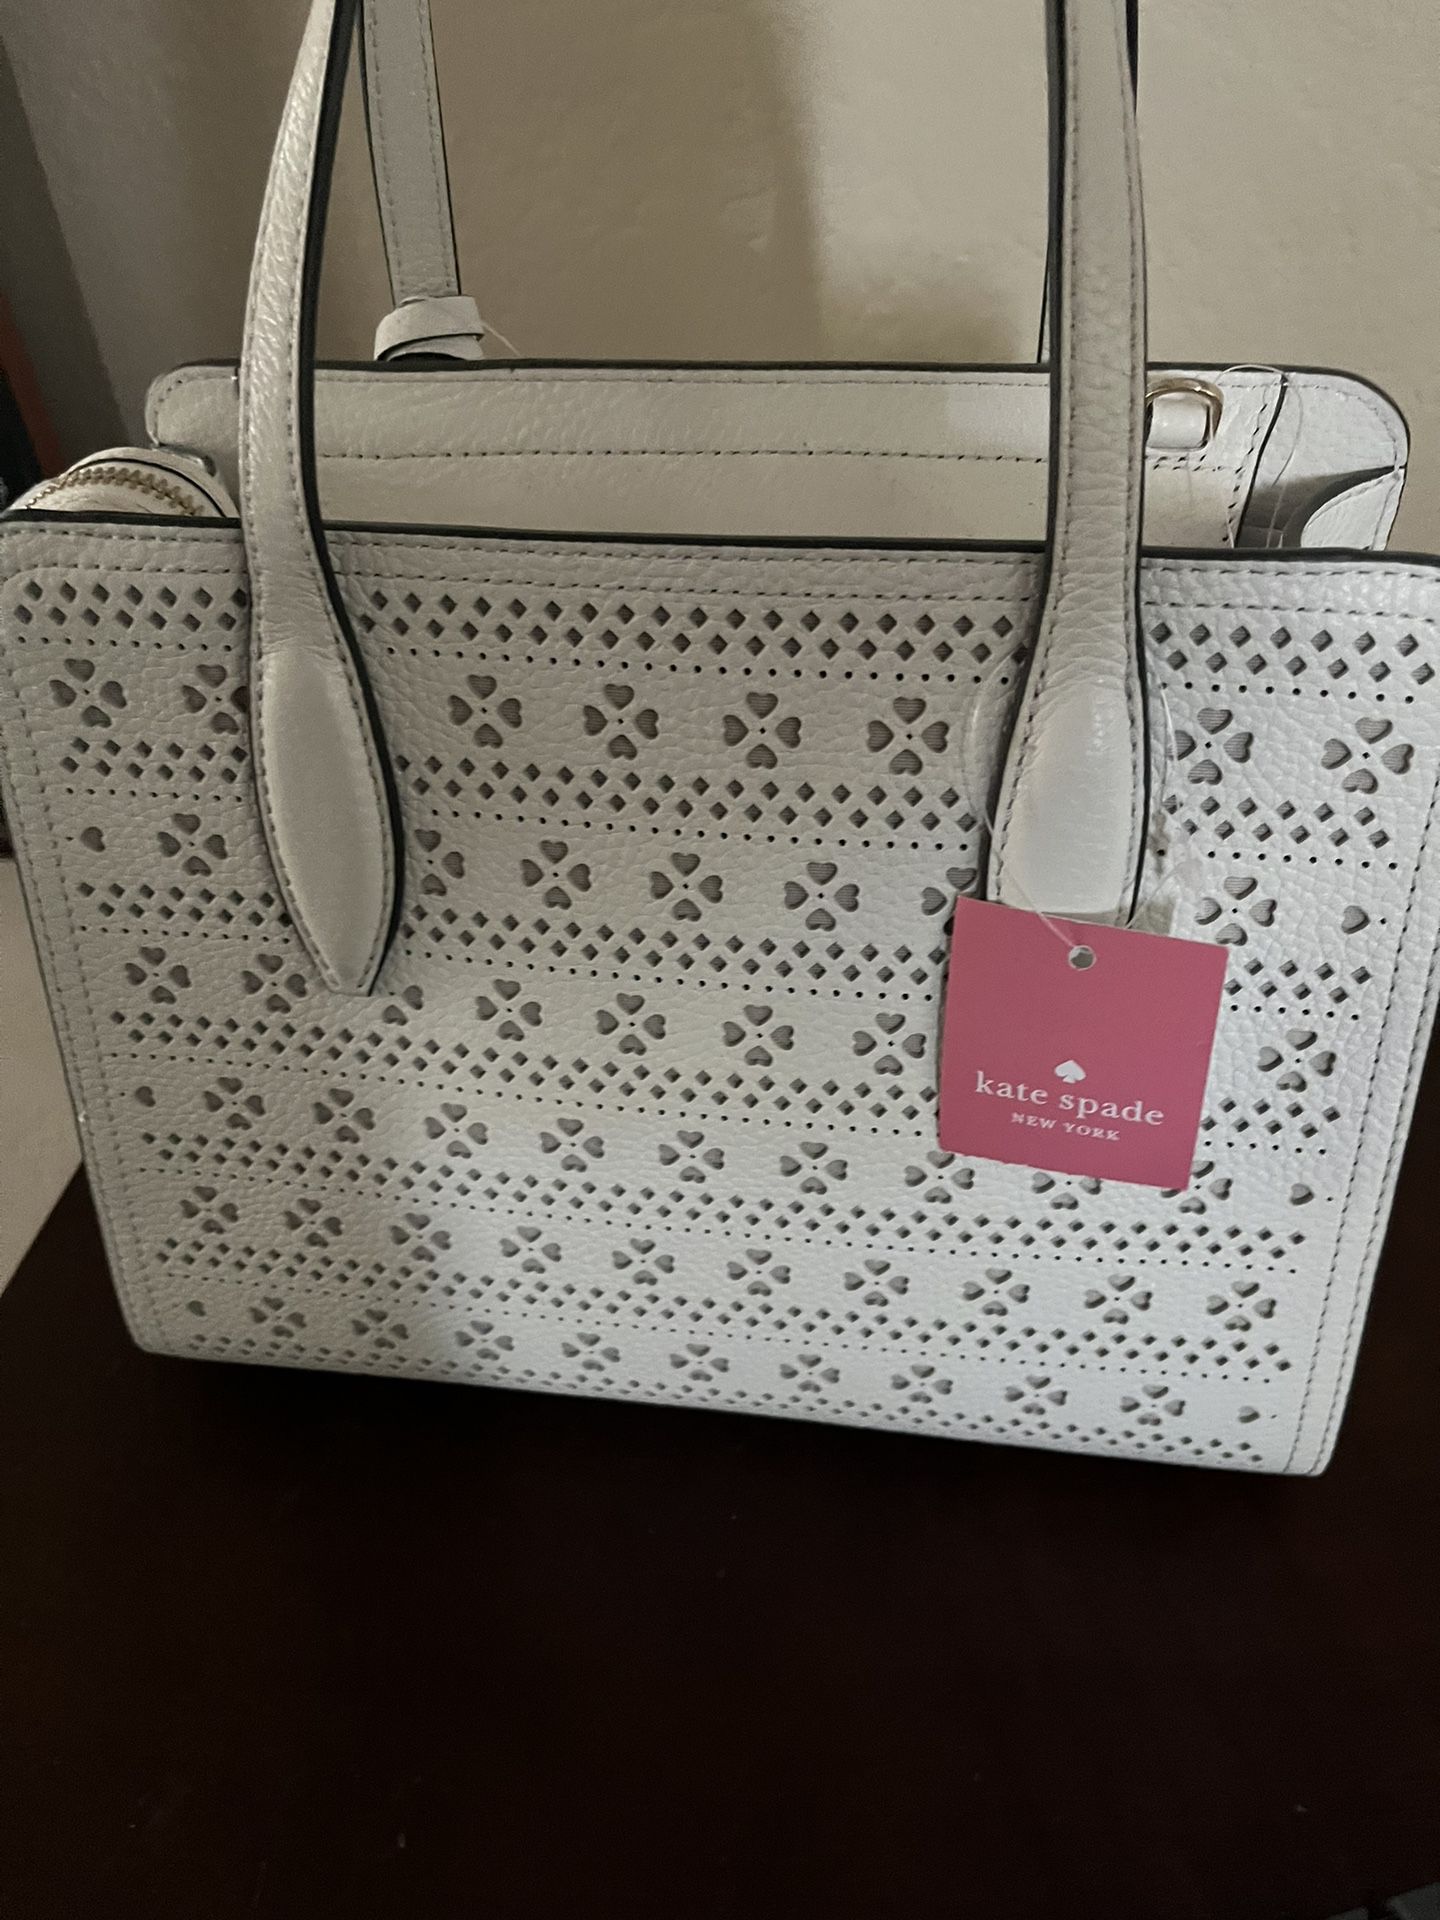 Alma Tonutti bag for Sale in Modesto, CA - OfferUp